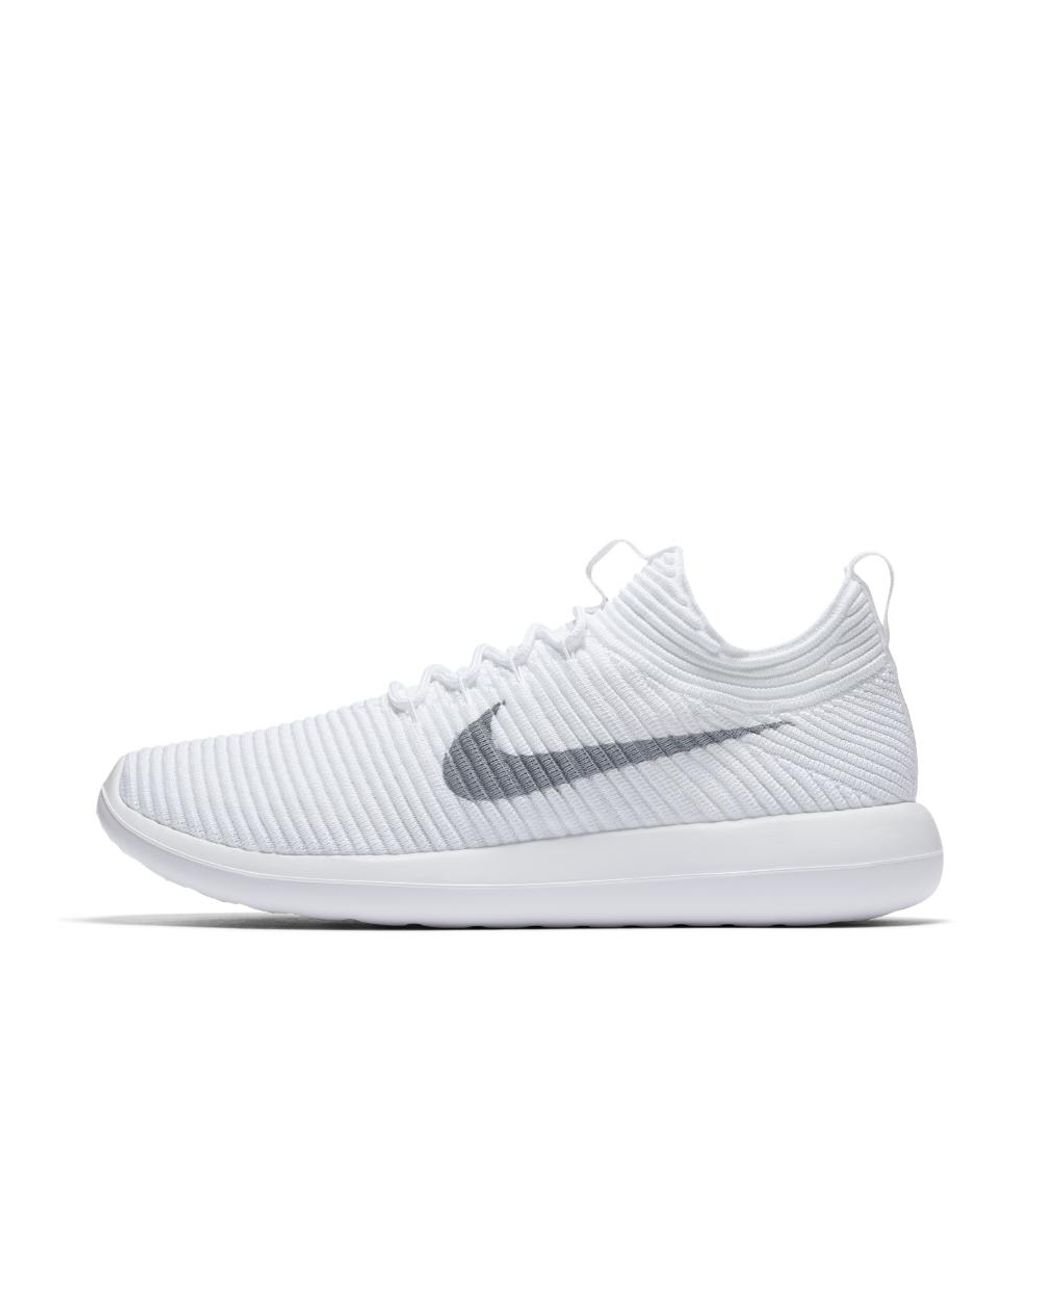 Nike Roshe Two Flyknit V2 Women's Shoe in White | Lyst